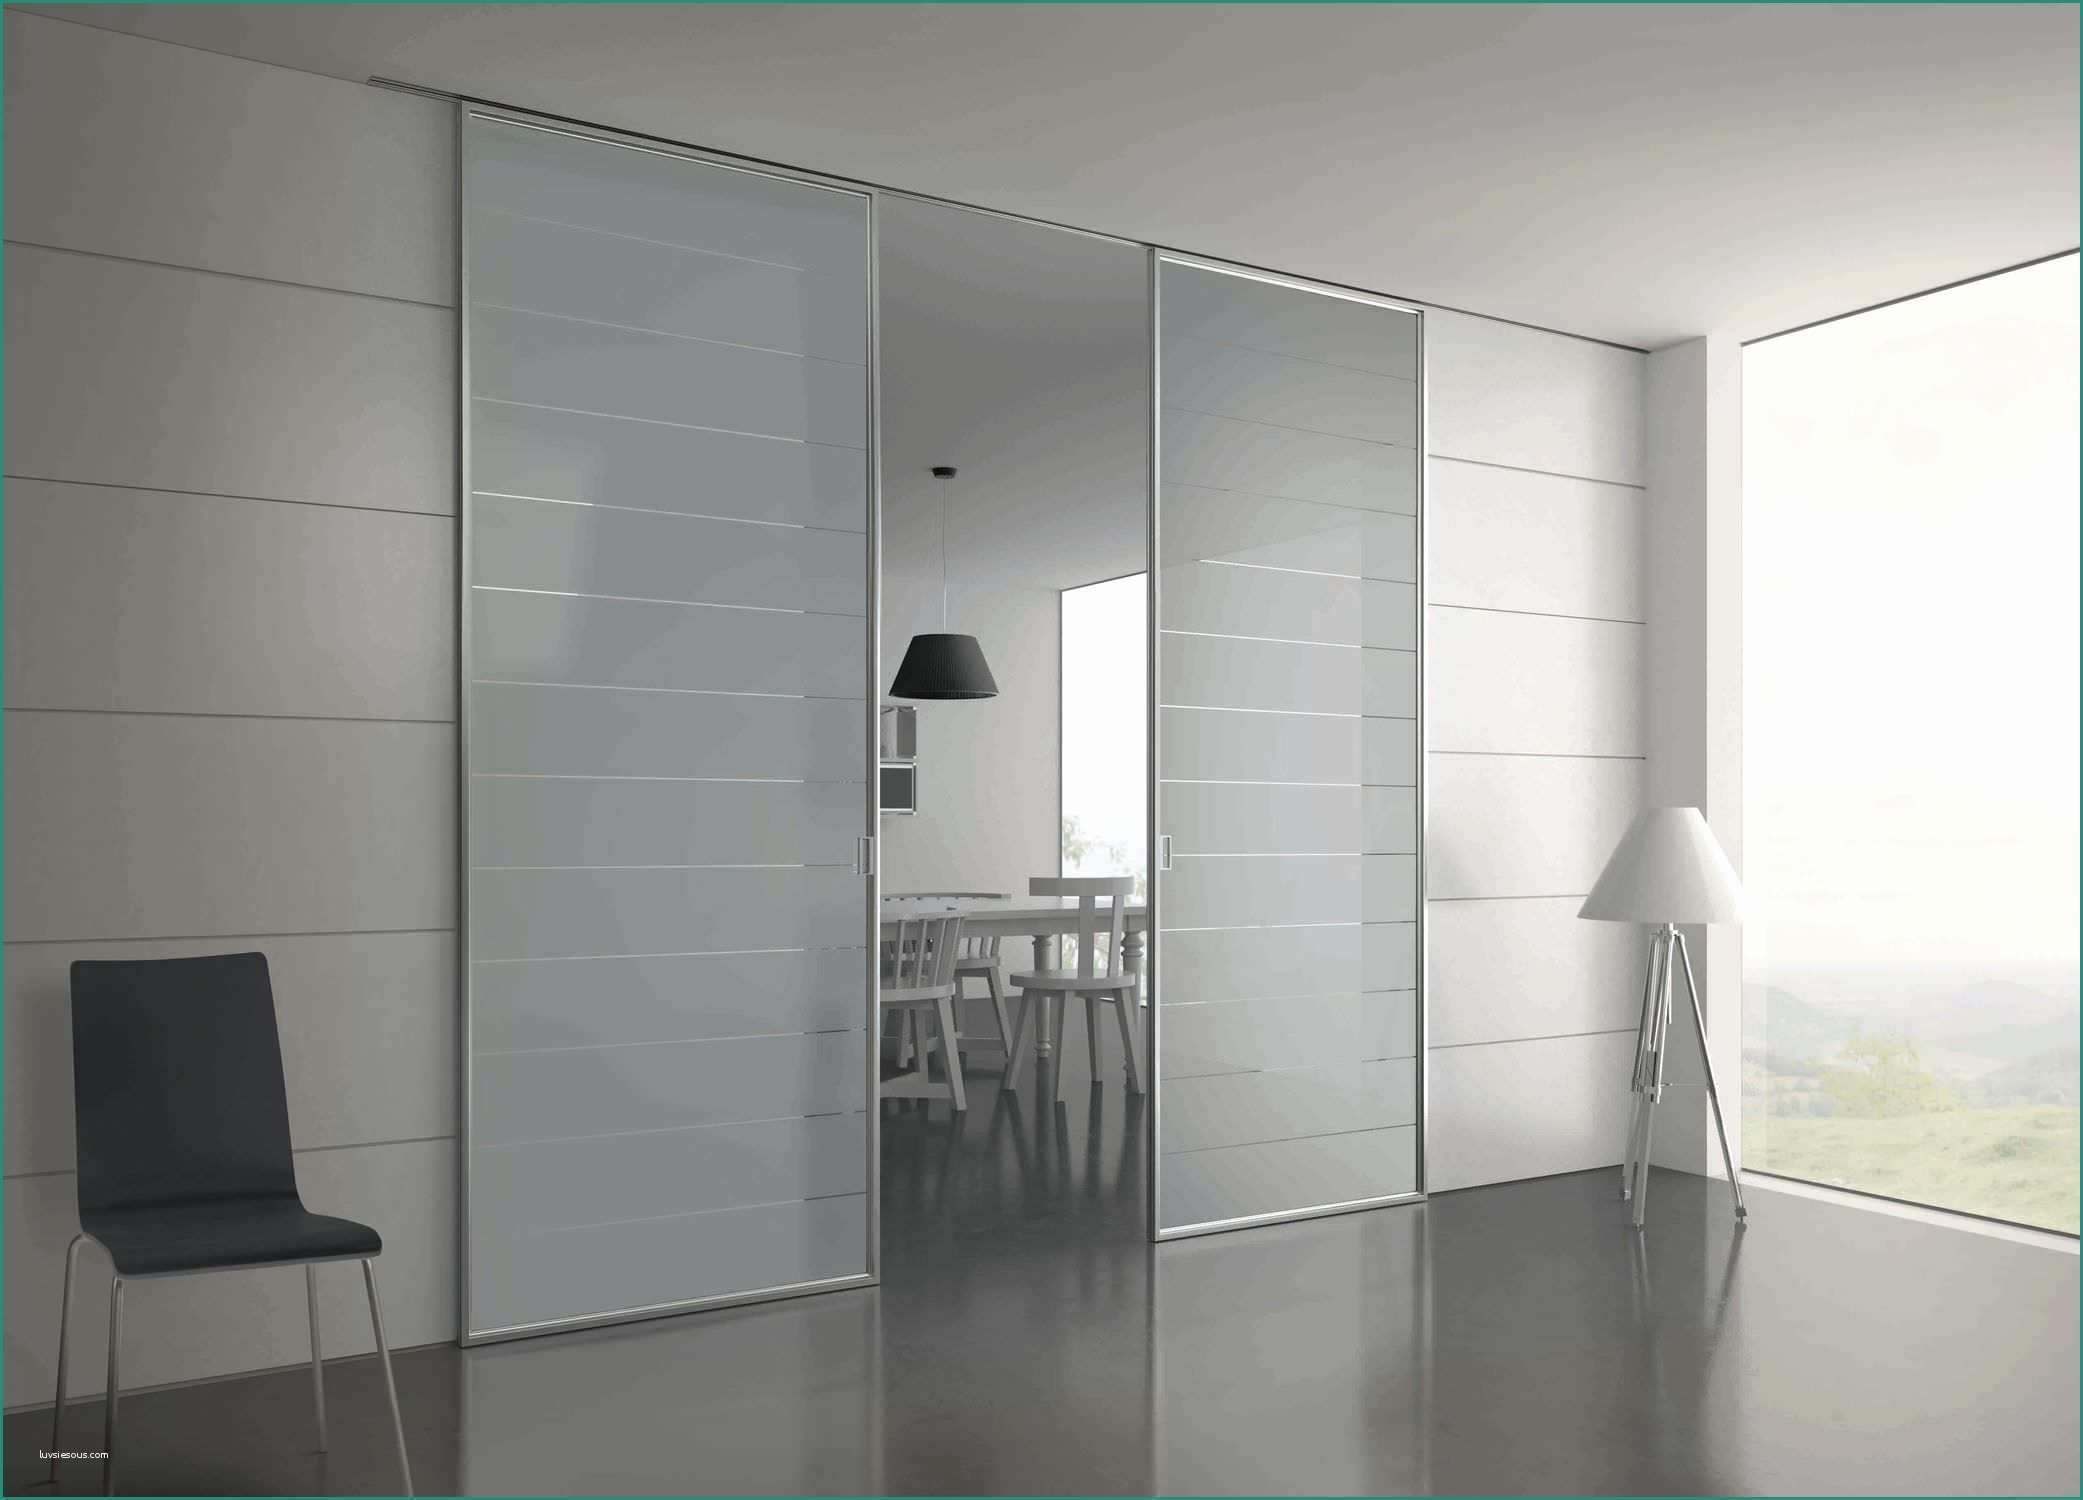 Porta Finestra Bricoman E Porte Di Design Per Interni Cheap Maniglie Porte Interne Ikea Per